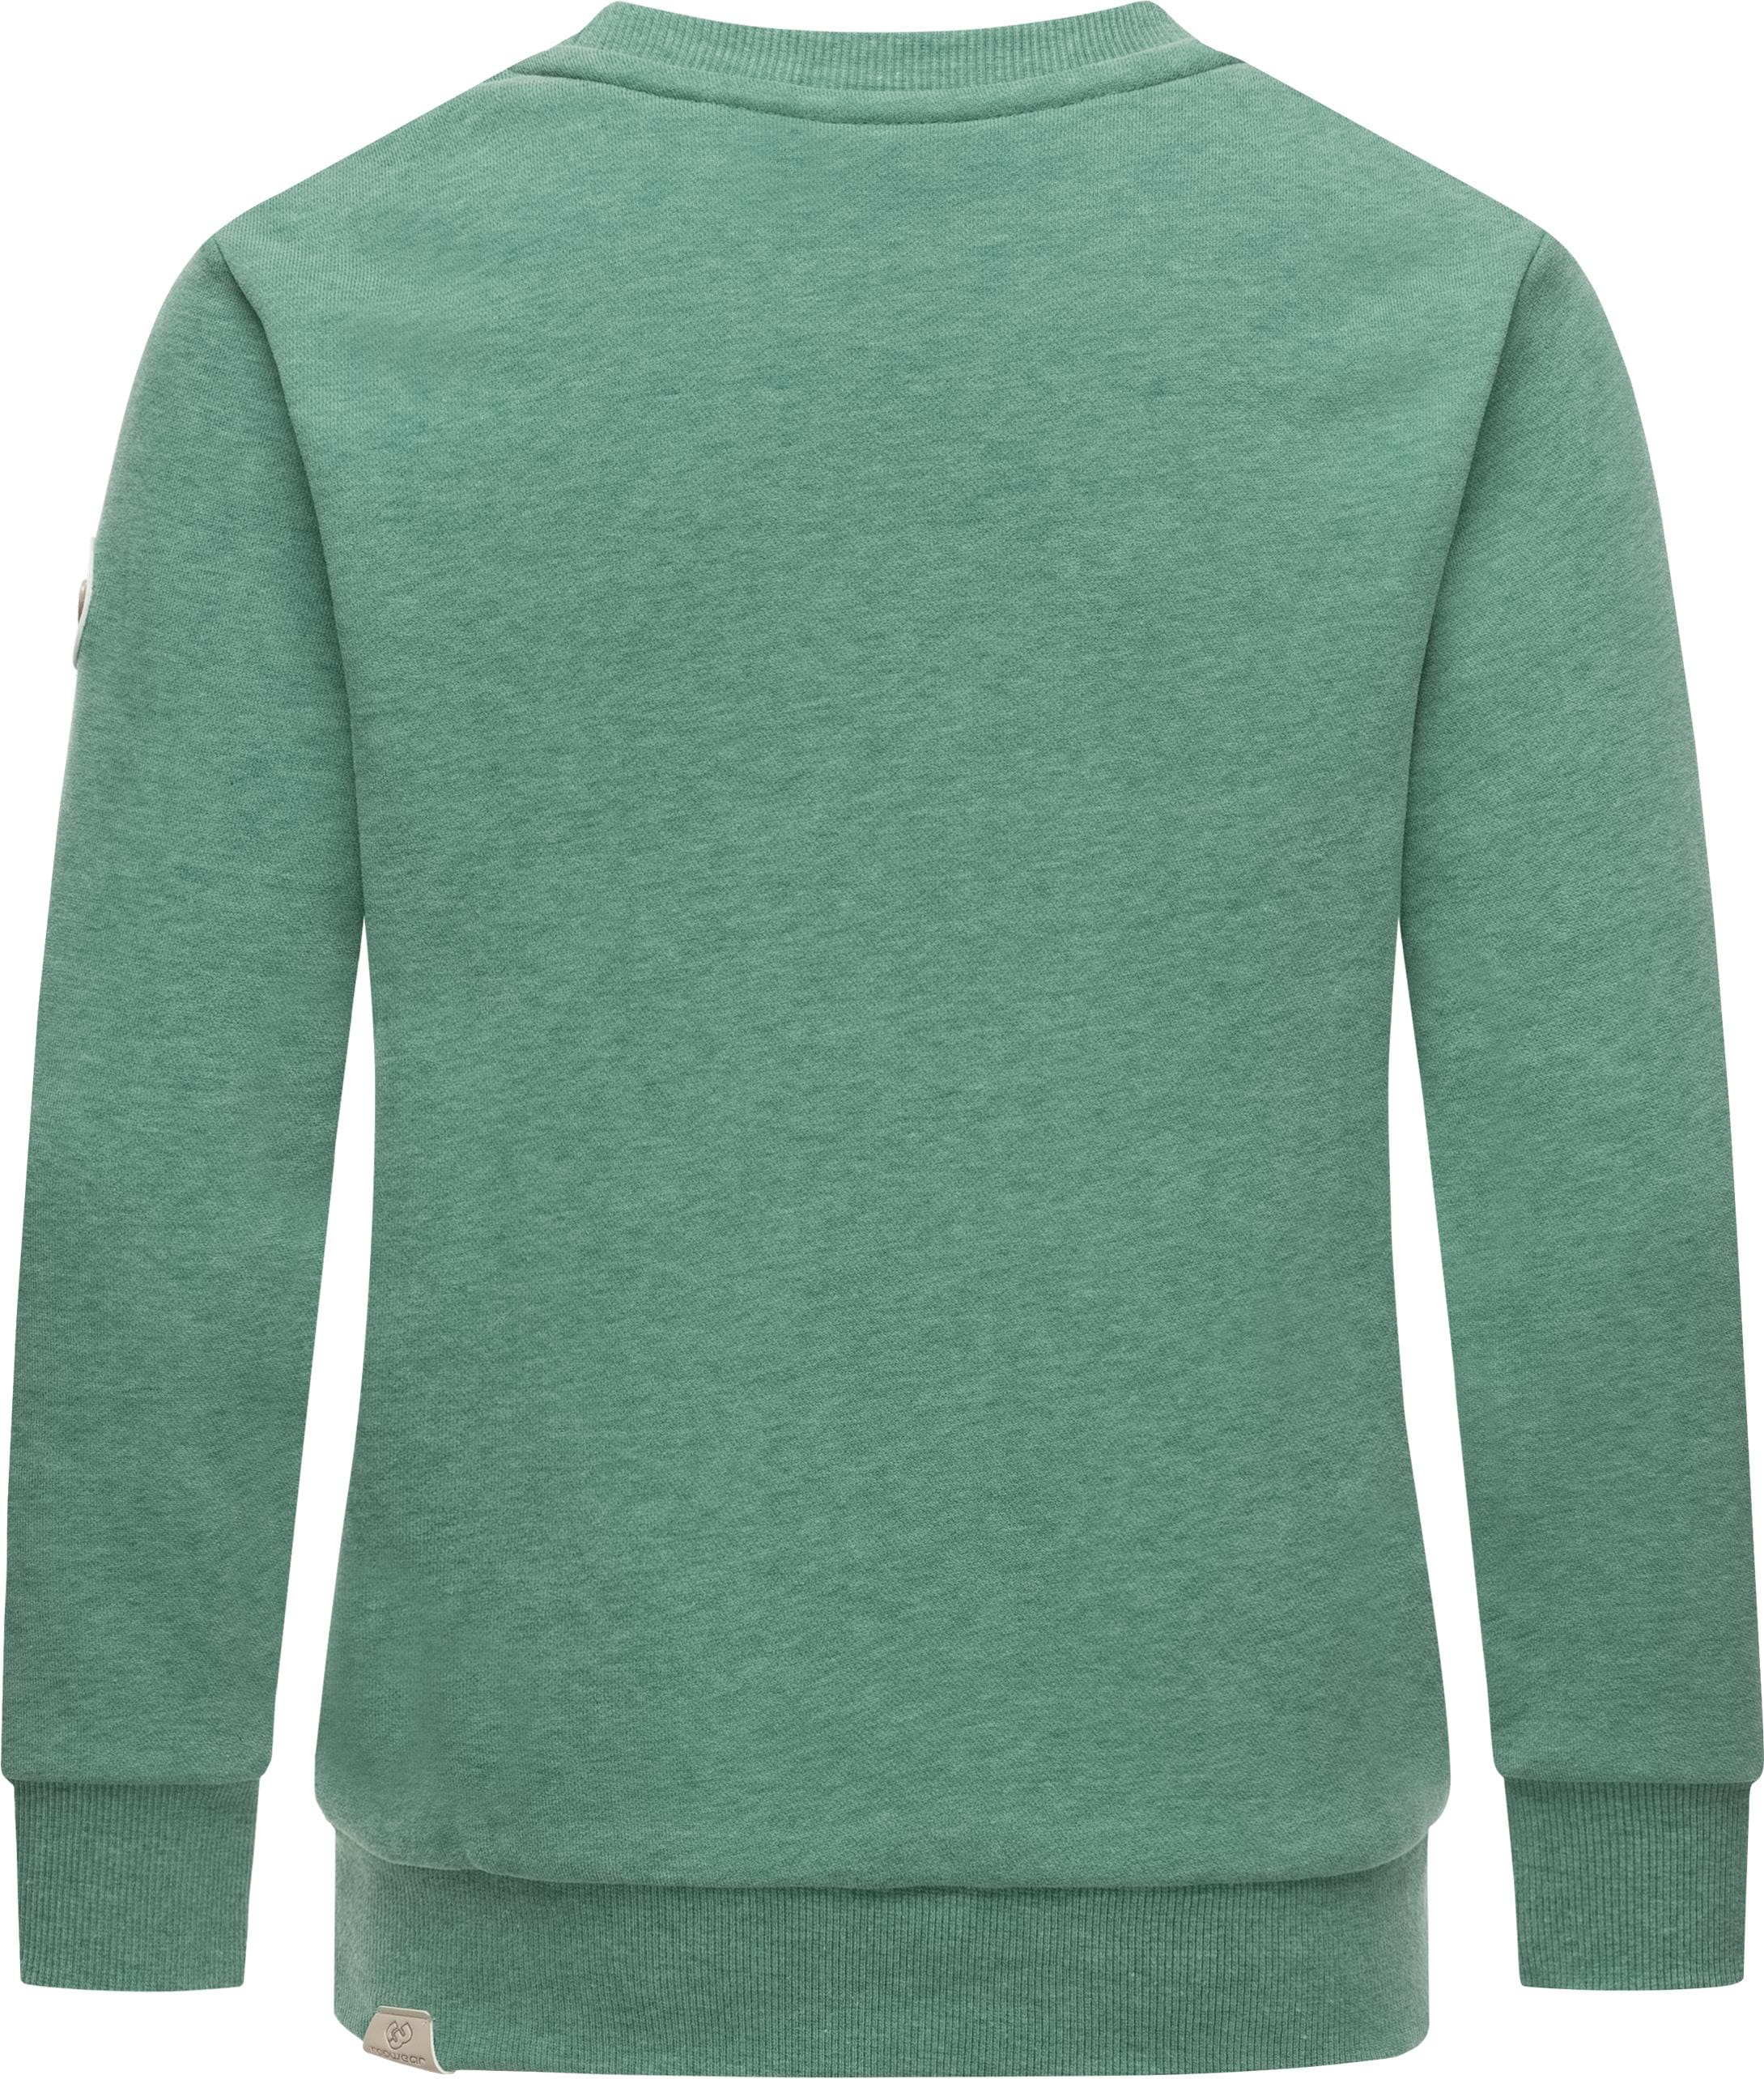 Ragwear Sweater »Evka Print«, stylisches Mädchen Sweatshirt mit coolem Logo  Print online kaufen | BAUR